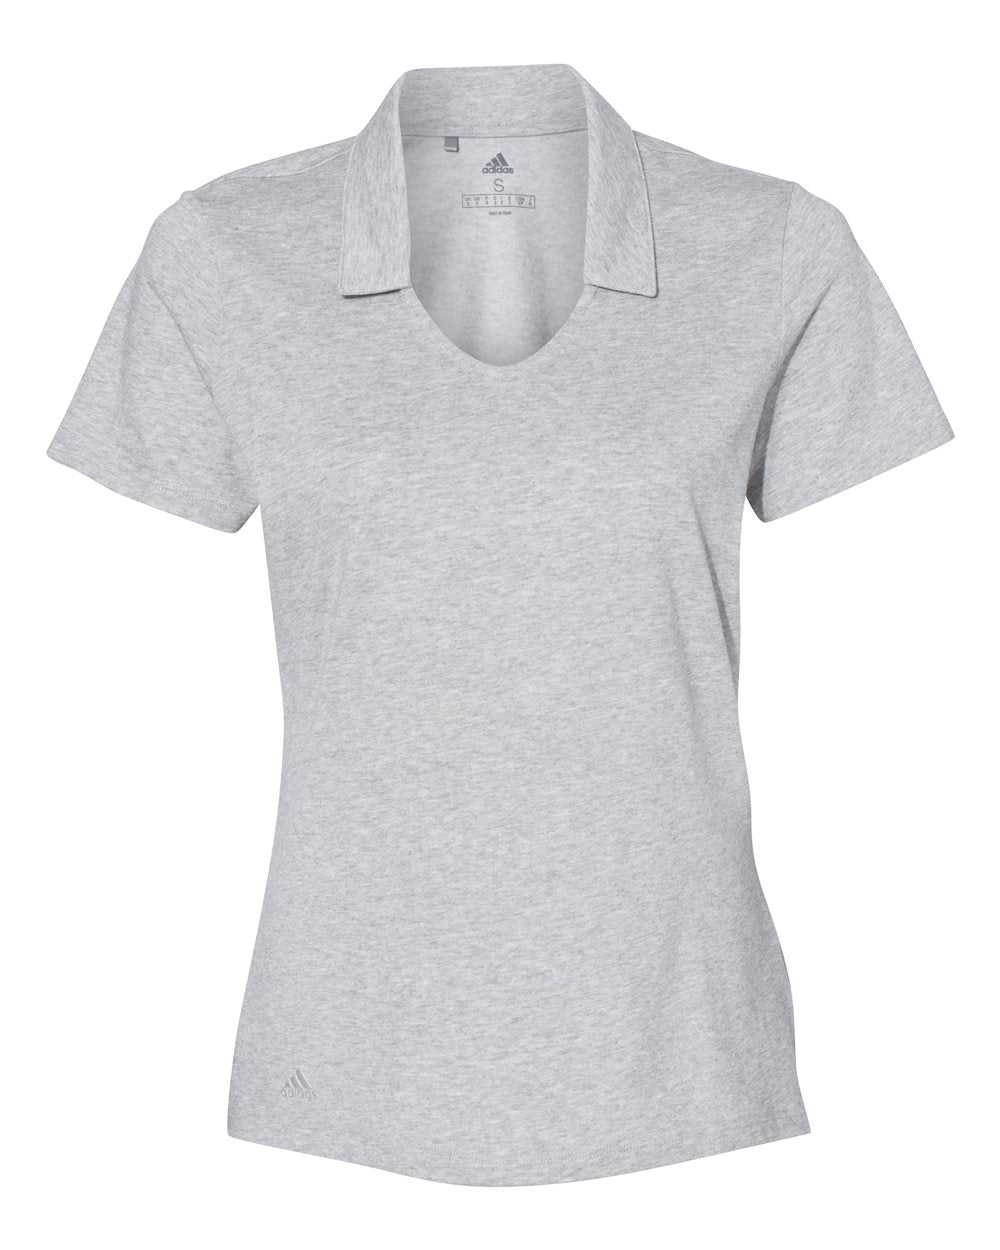 Adidas A323 Women's Cotton Blend Sport Shirt - Medium Grey Heather - HIT a Double